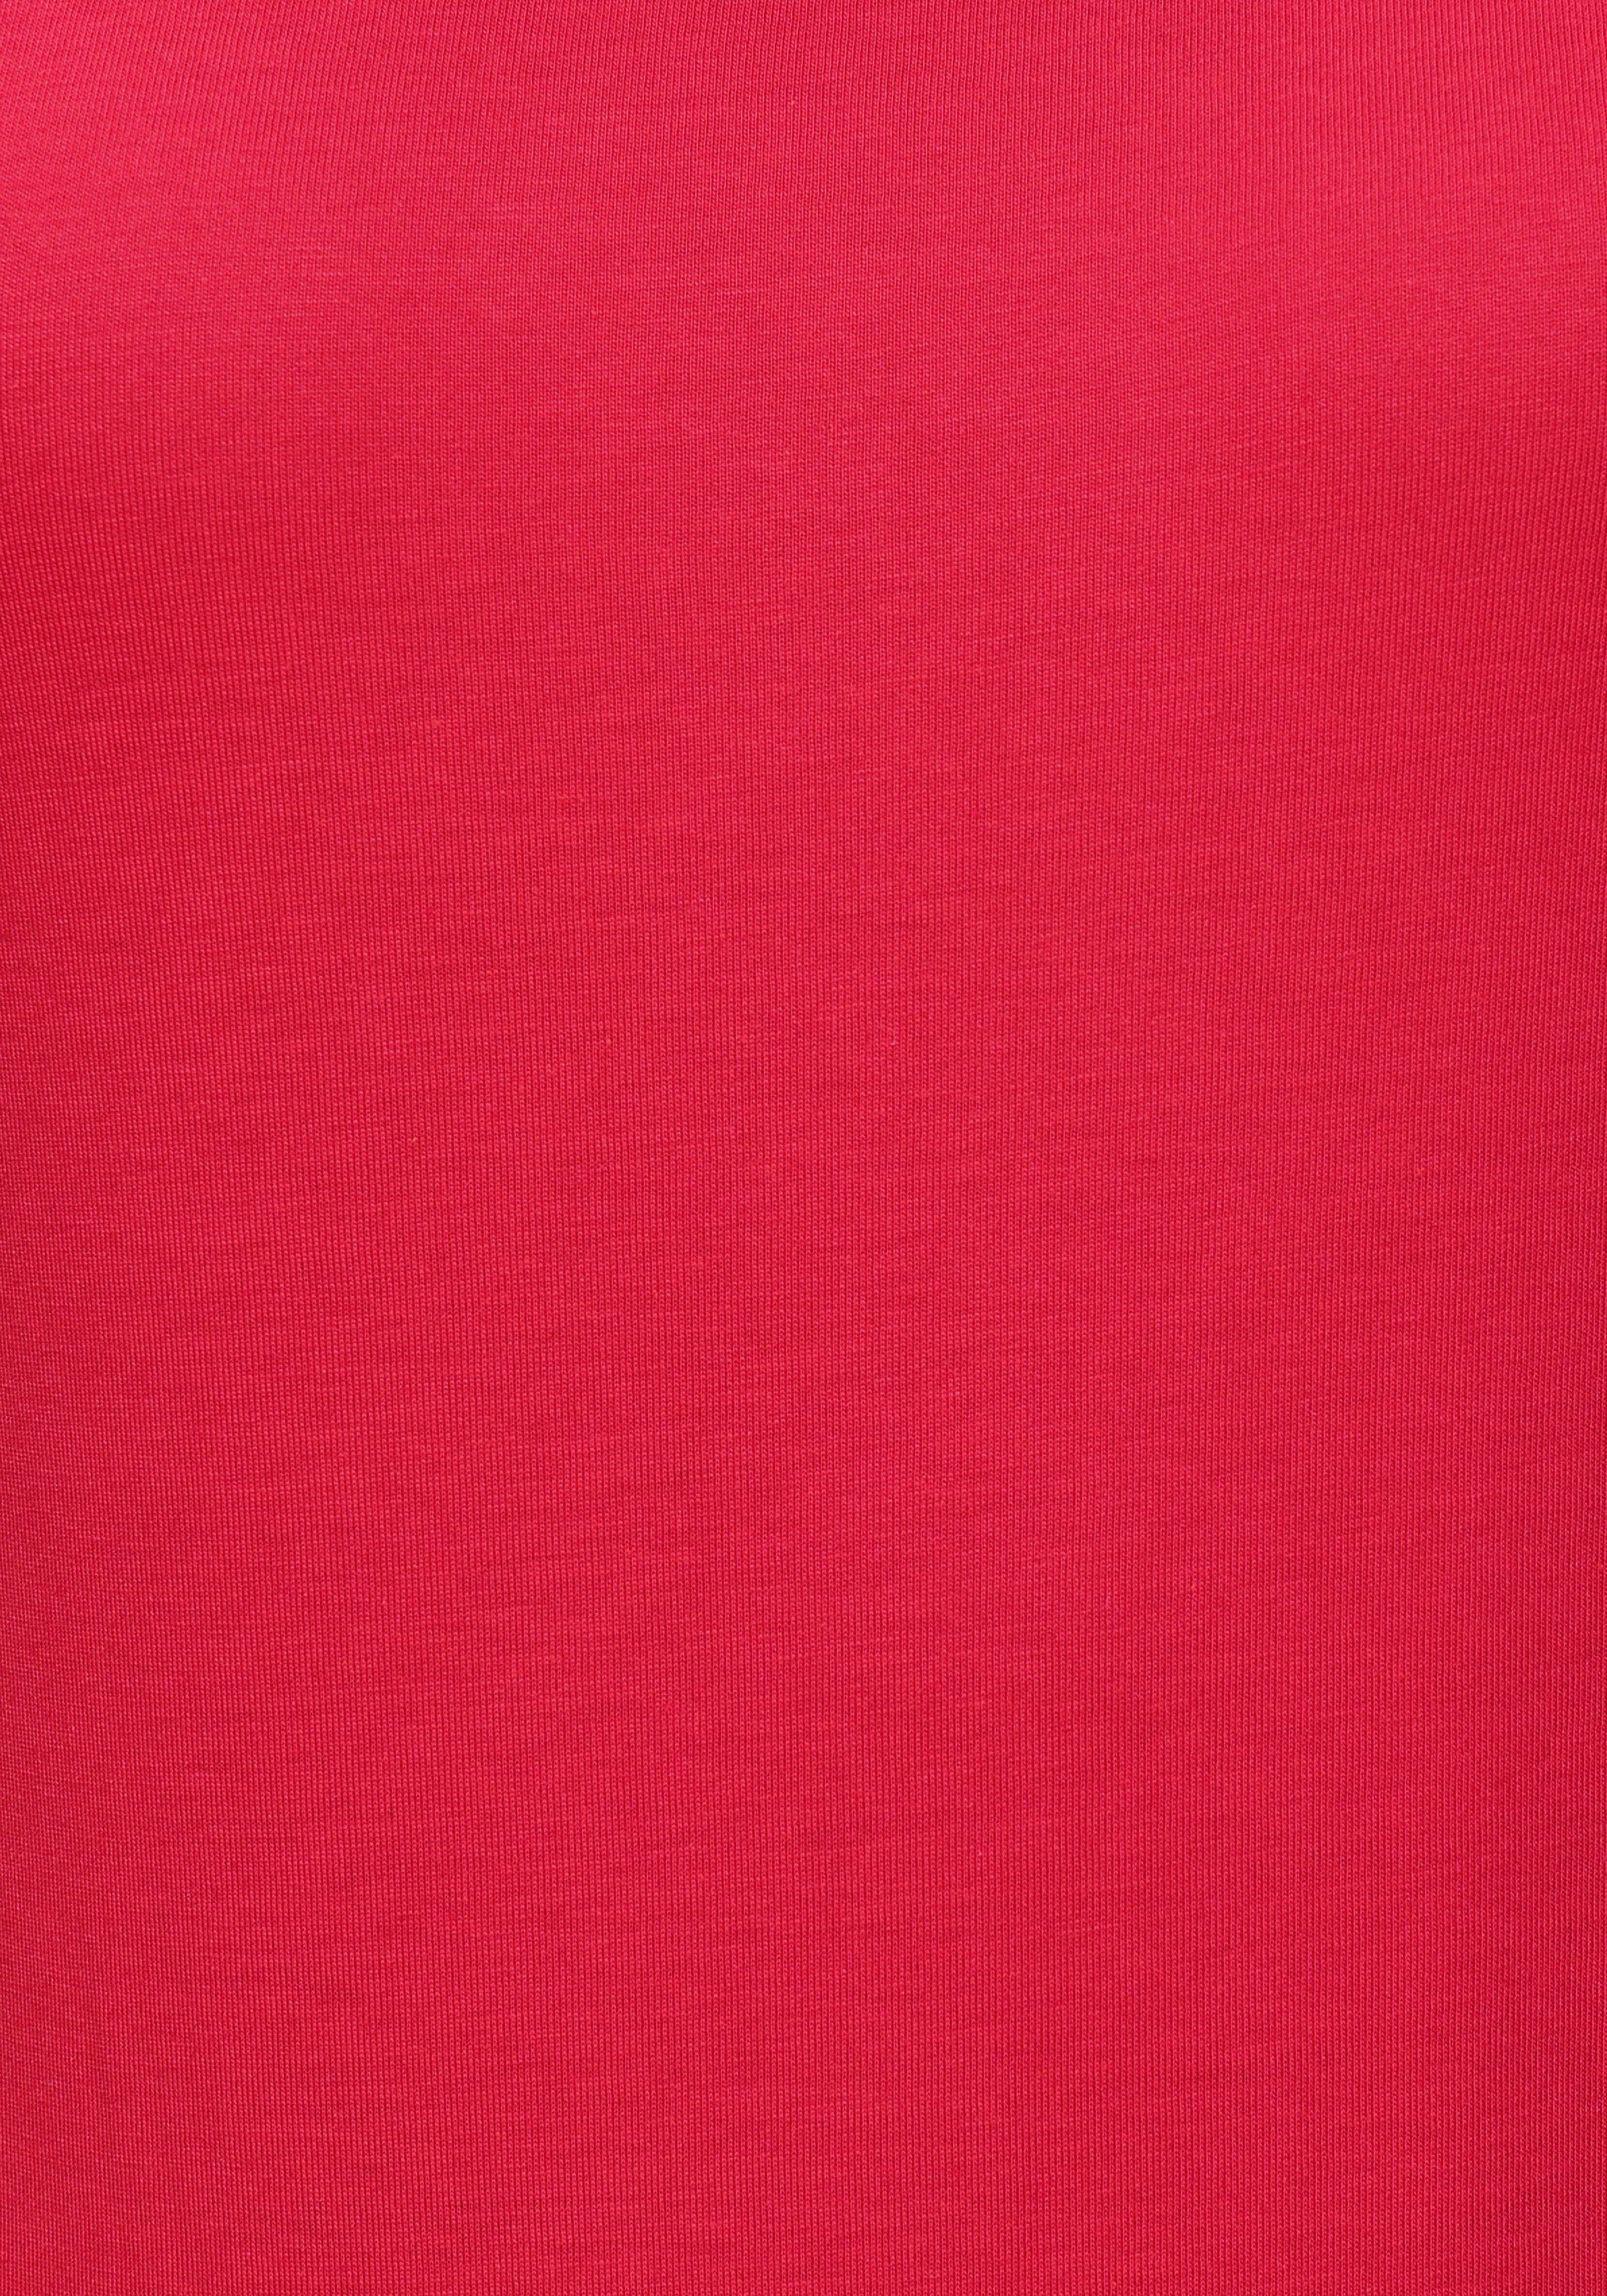 Flashlights rot, (2er-Pack) kleinem & Ärmelaufschlag jeansblau mit überschnittenen Schultern T-Shirt